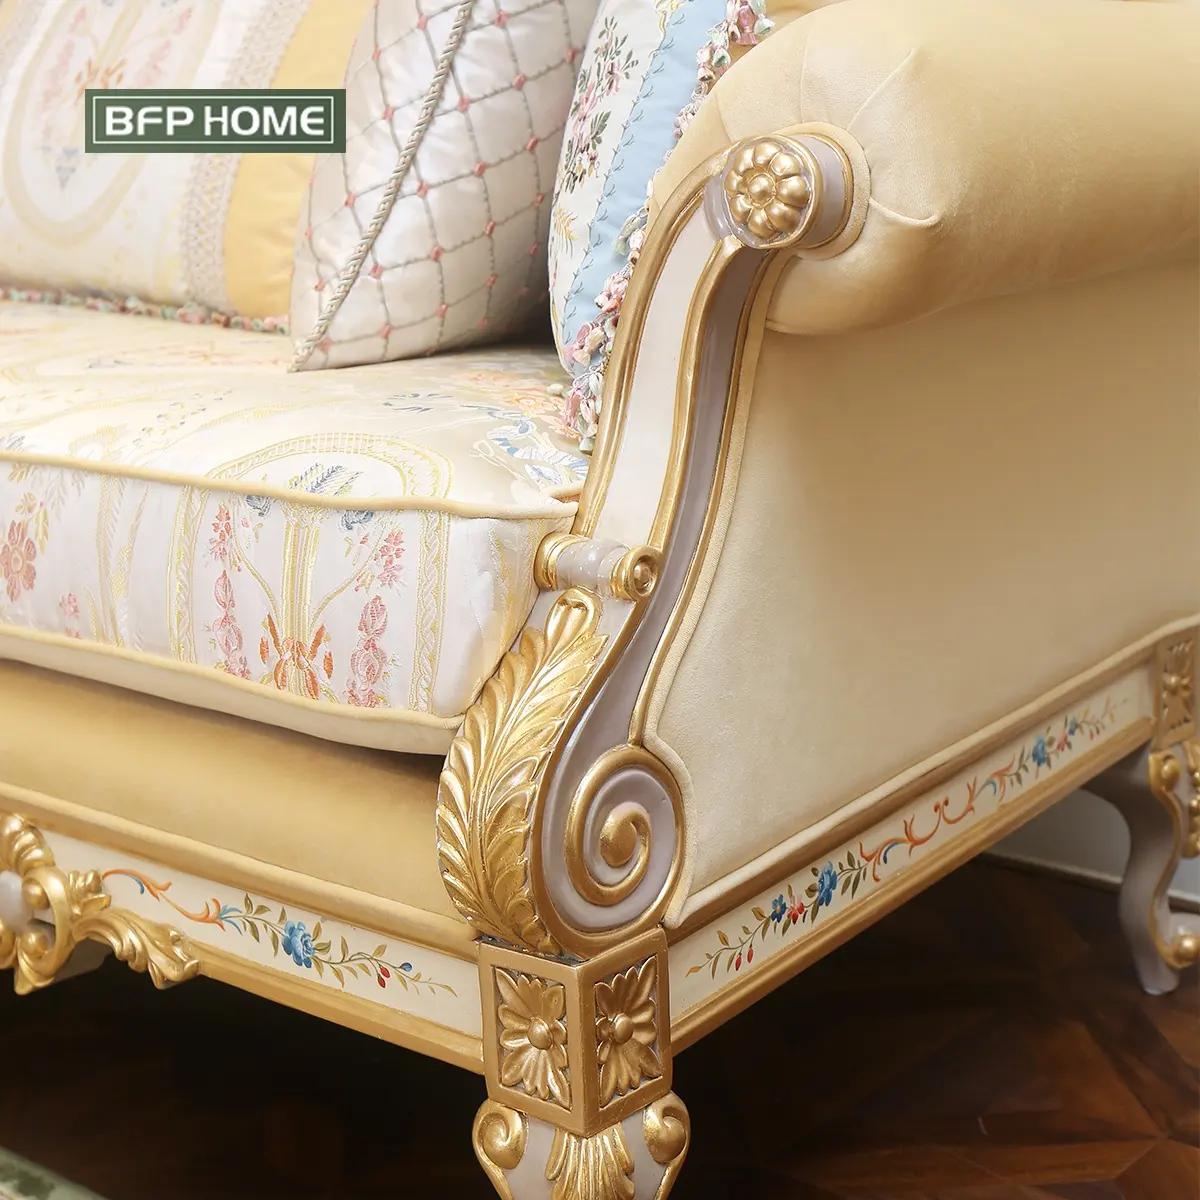 BFP ev fransız lüks tarzı sağlam ahşap mobilya High-end kanepe klasik oturma odası koltuk takımı ile altın/gümüş boya